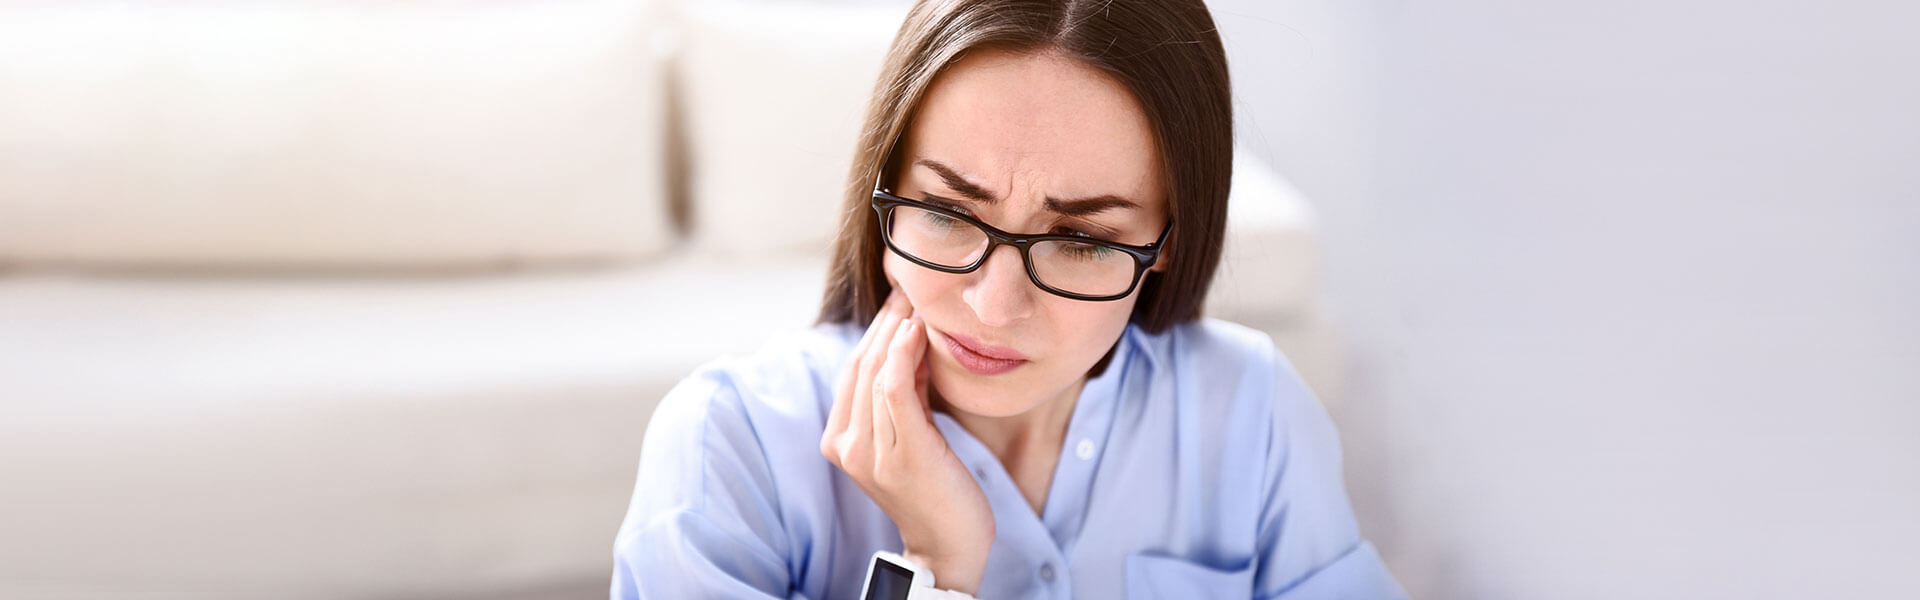 All you need to know about Temporomandibular disorder treatment